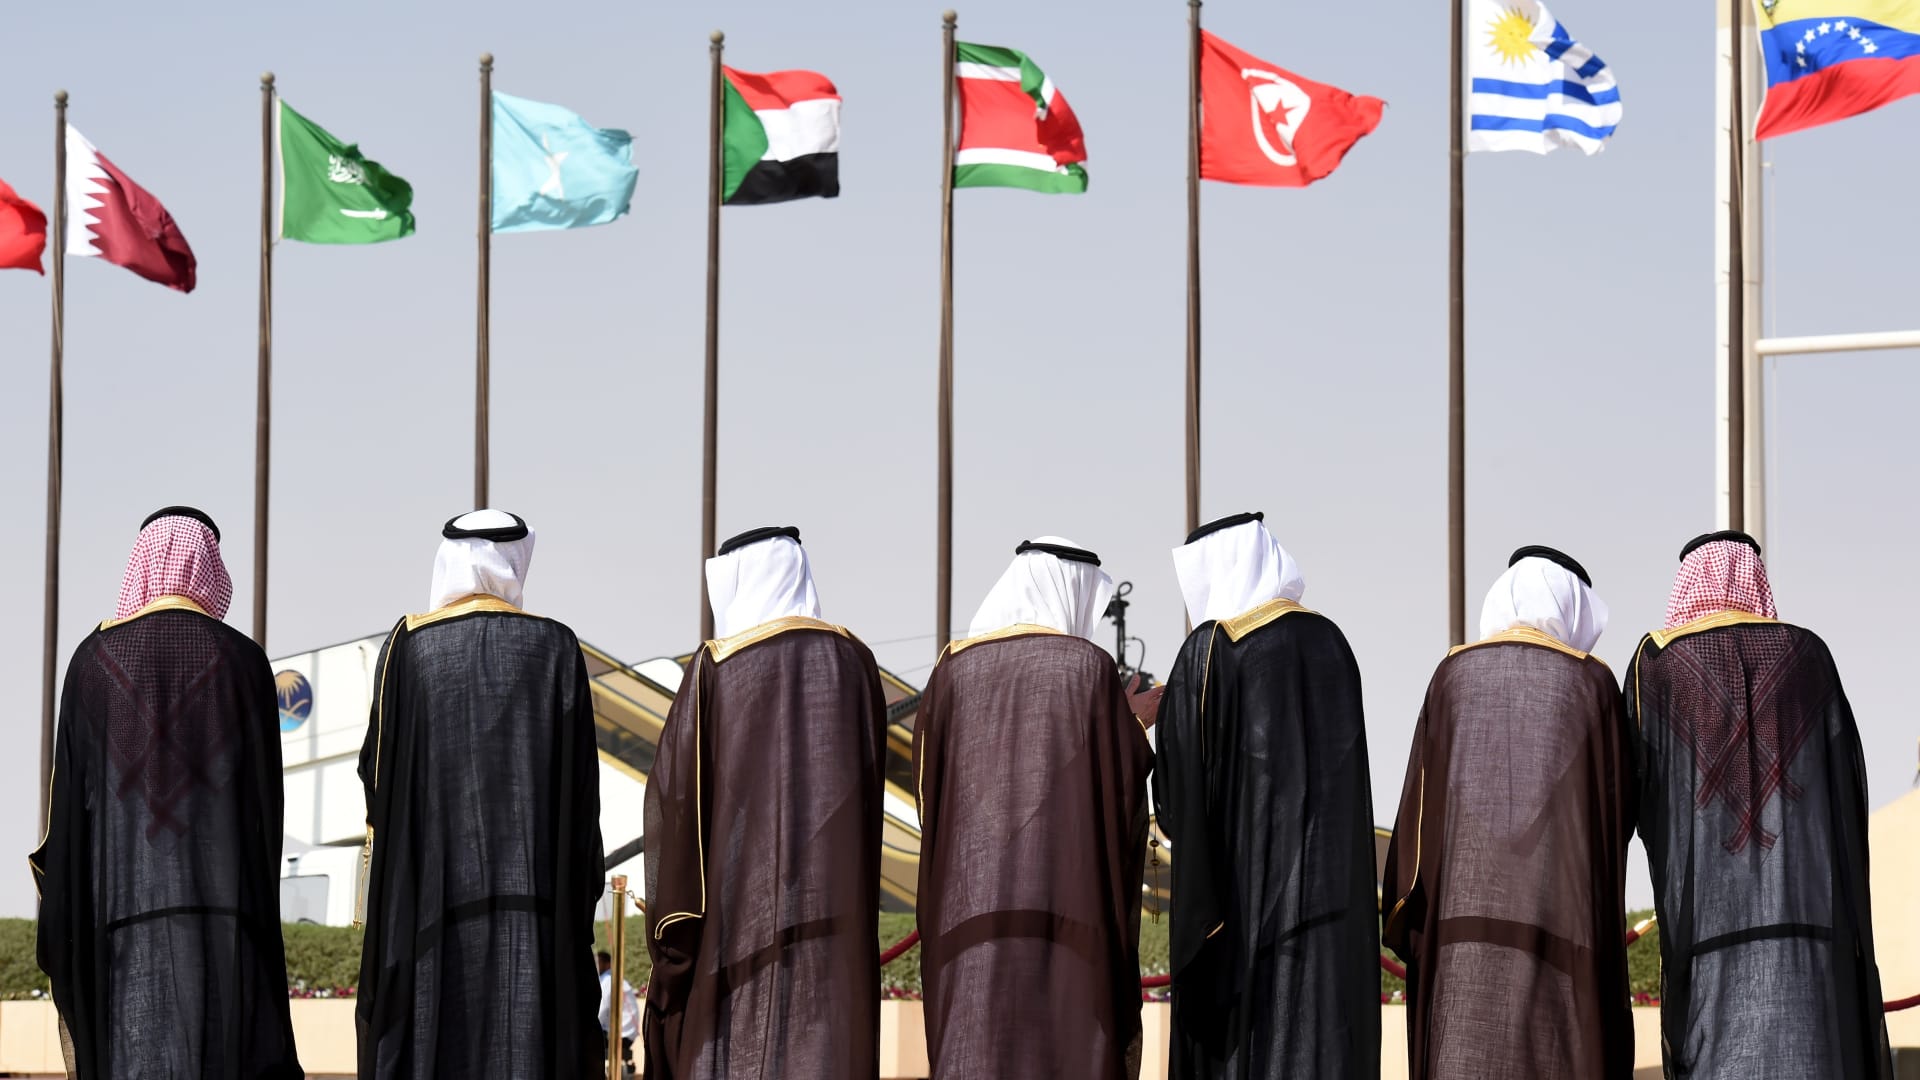 قرقاش يرد على سؤال لـCNN عن إمكانية تصاعد أزمة قطر إلى مواجهة عسكرية